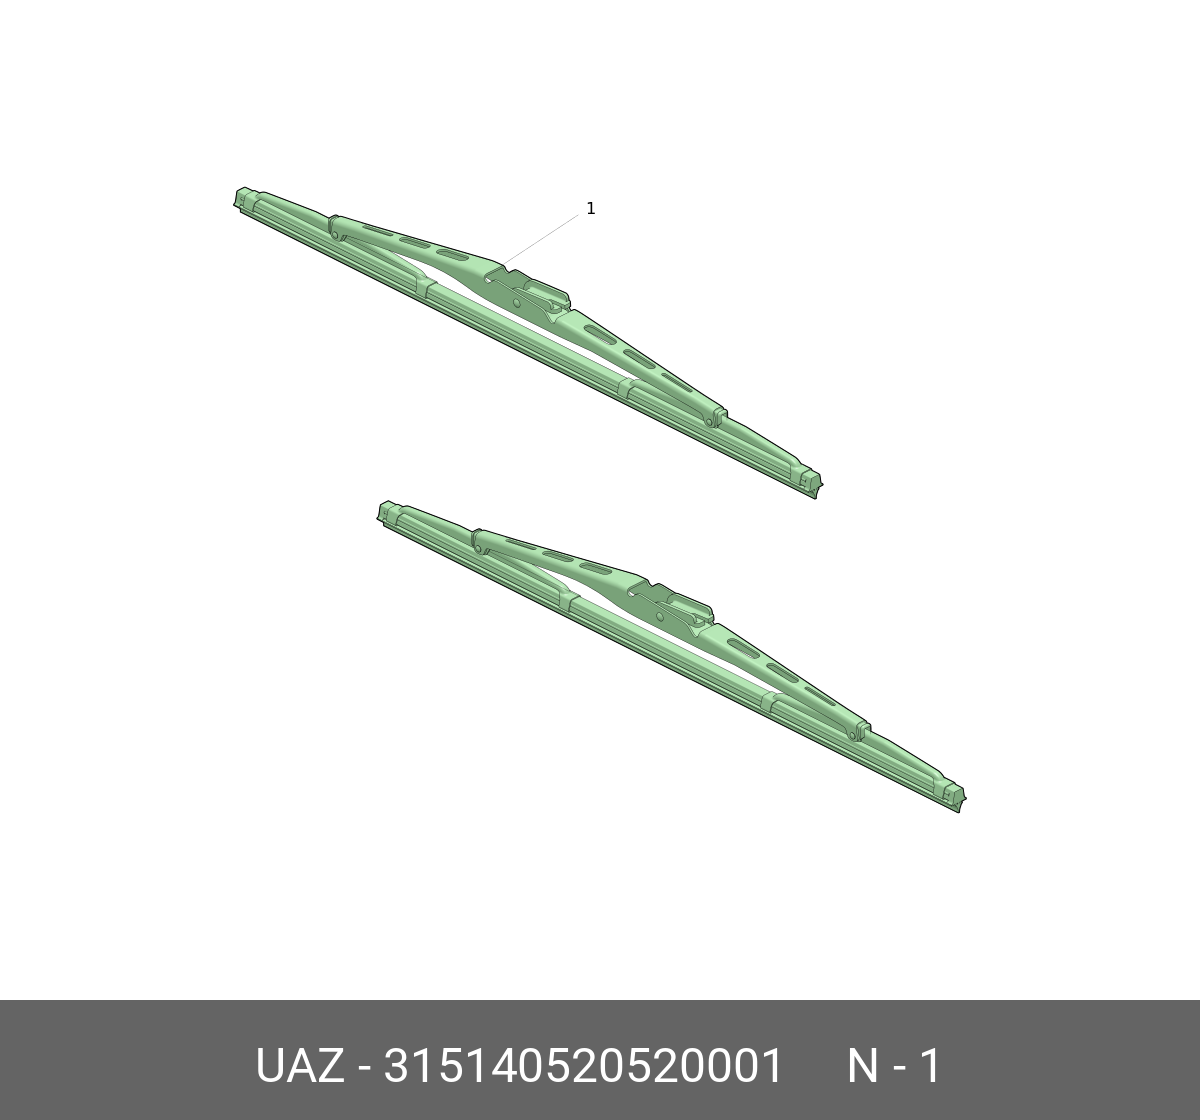 Щётка стеклоочистителя, передняя   UAZ арт. 315140520520001